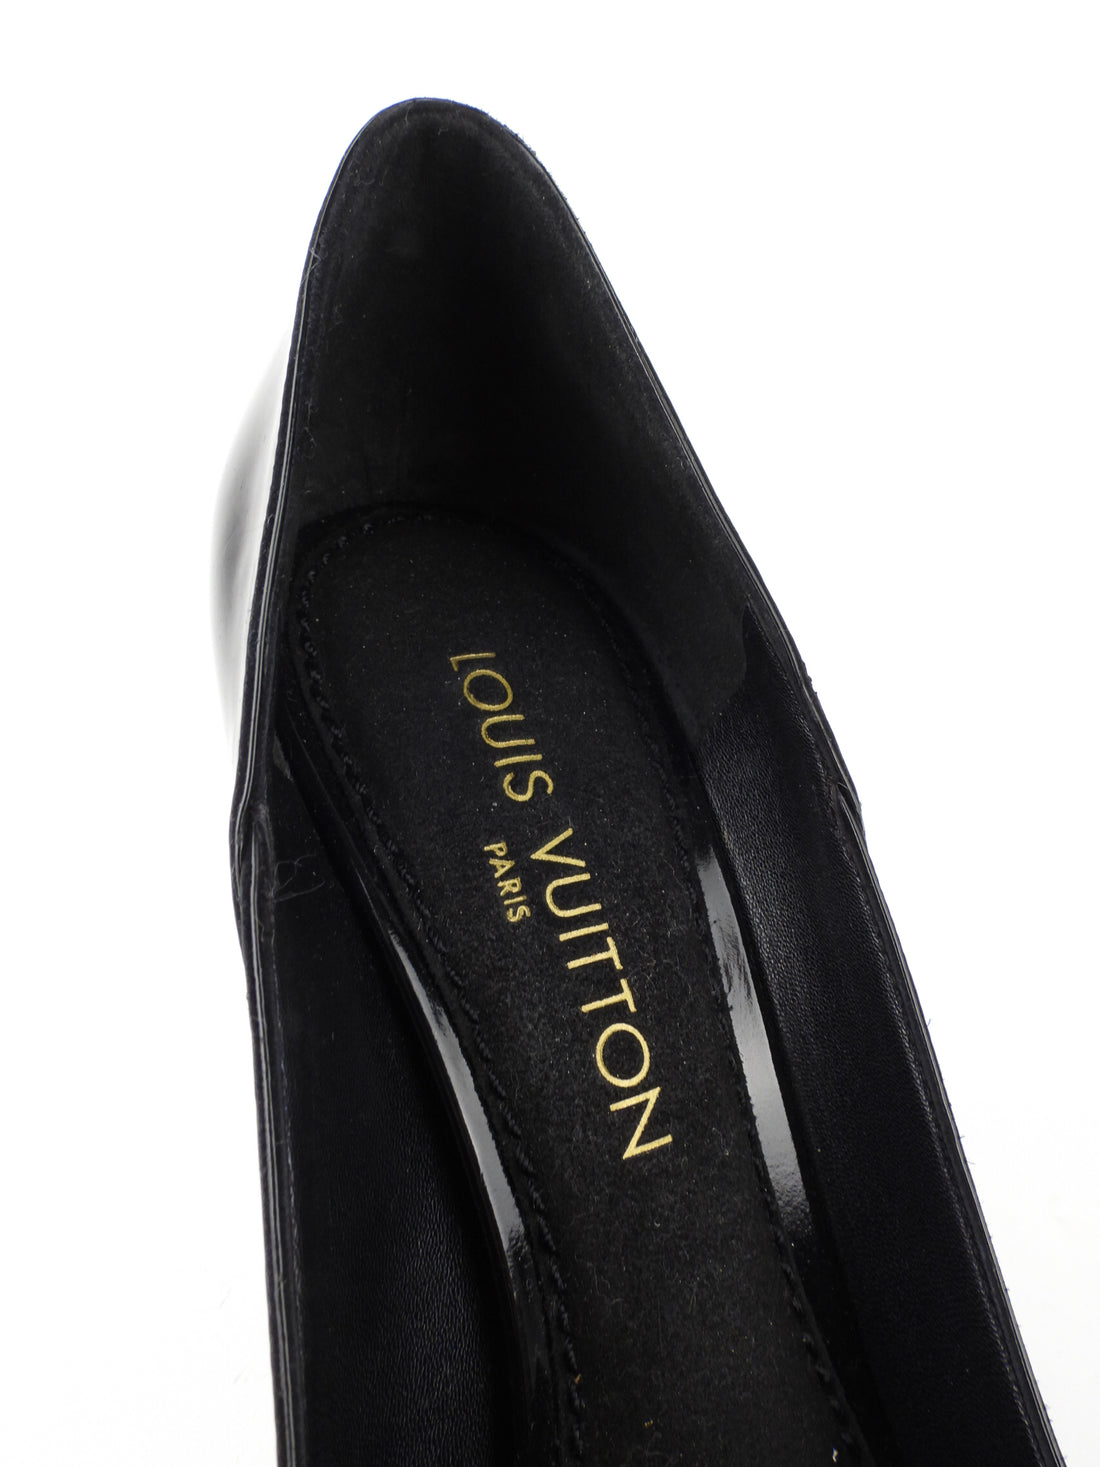 Louis Vuitton Bow LV Pumps Black For Women - Clothingta